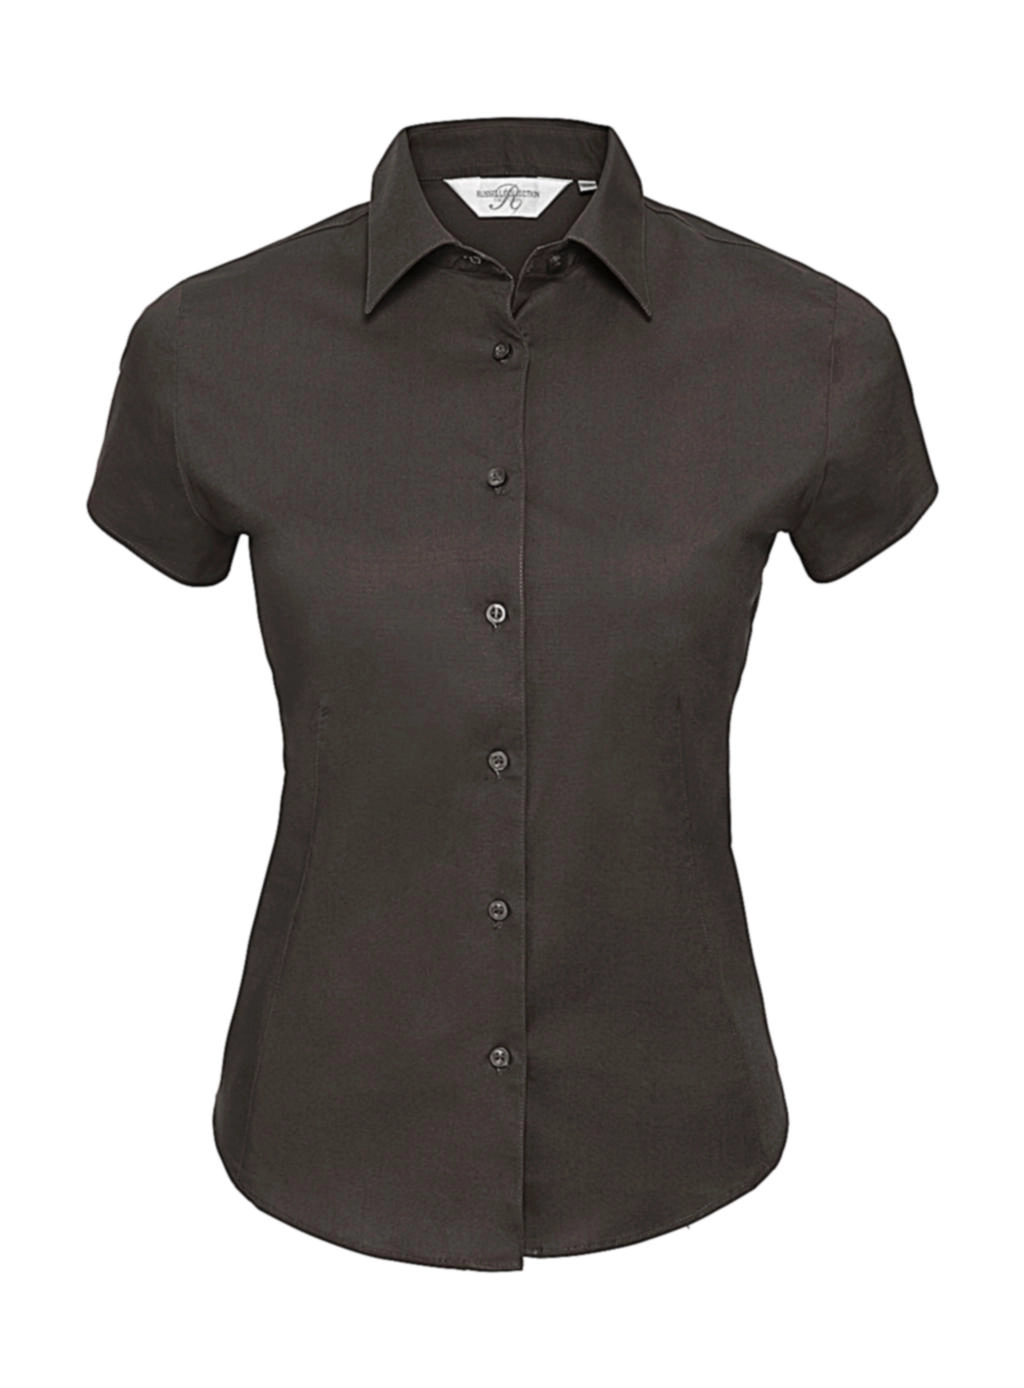 Ladies` Easy Care Fitted Shirt zum Besticken und Bedrucken in der Farbe Chocolate mit Ihren Logo, Schriftzug oder Motiv.